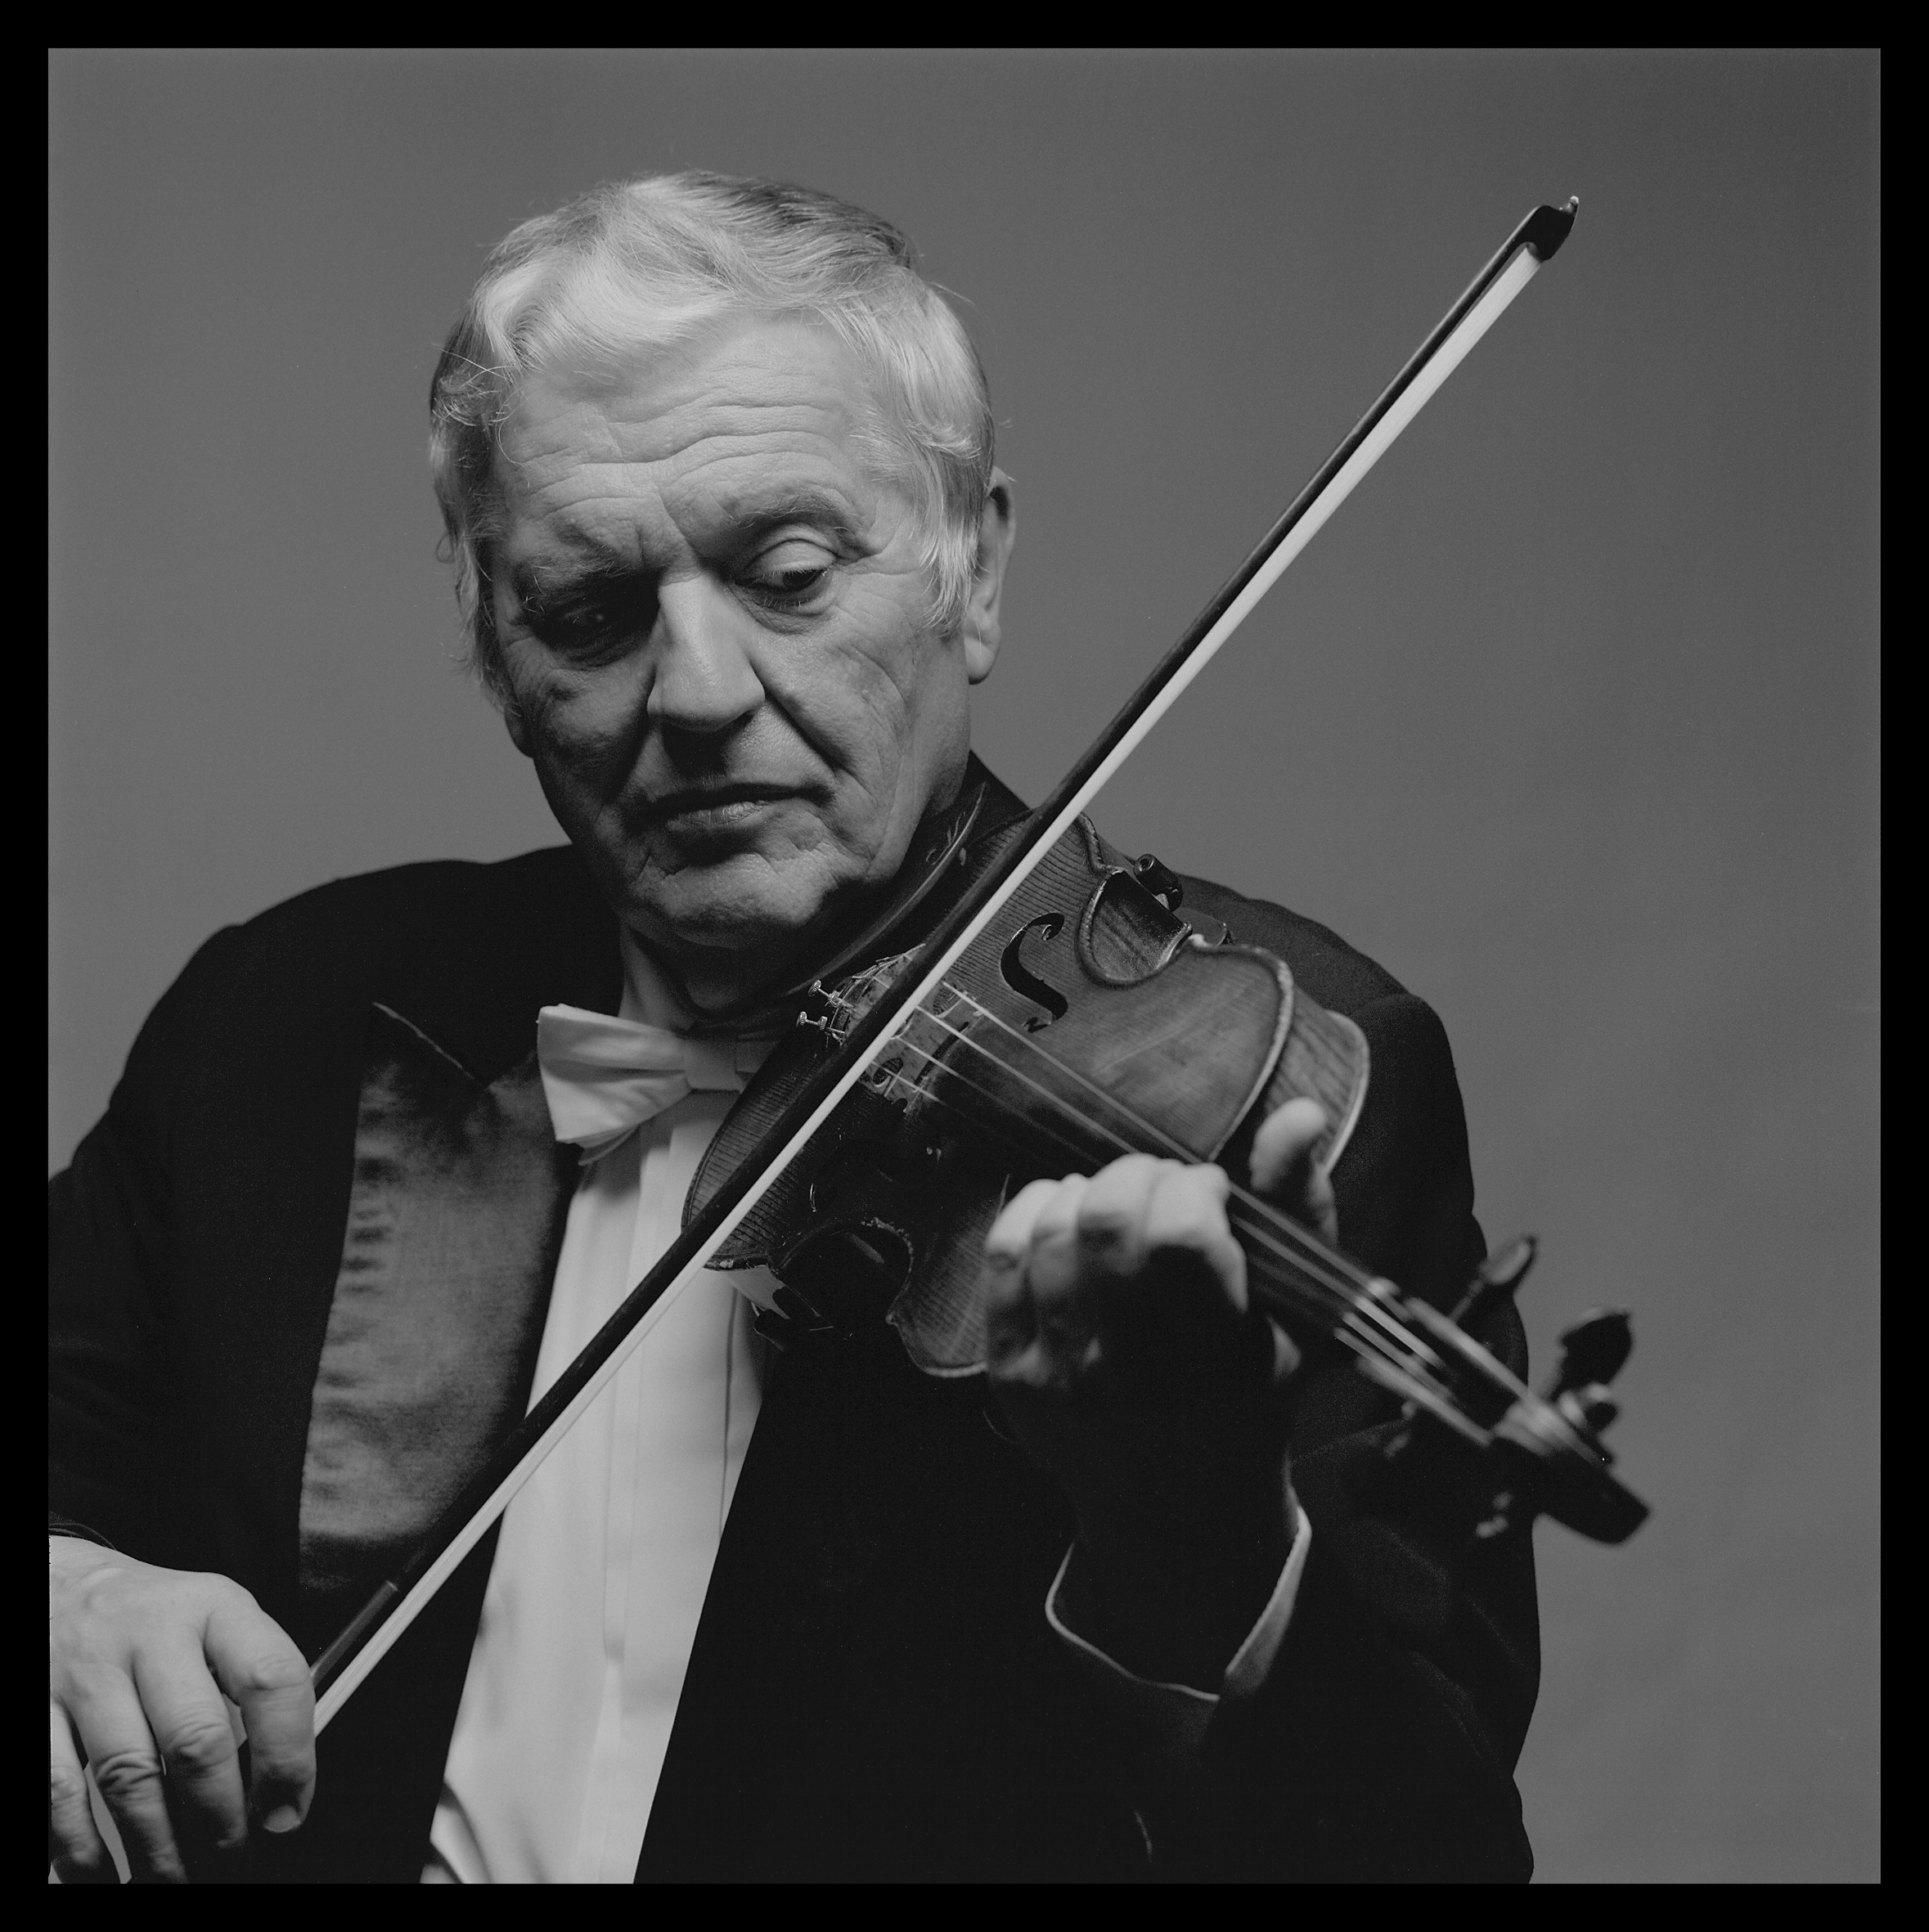 czarno-białe zdjęcie portretowe przedstawiające skrzypka